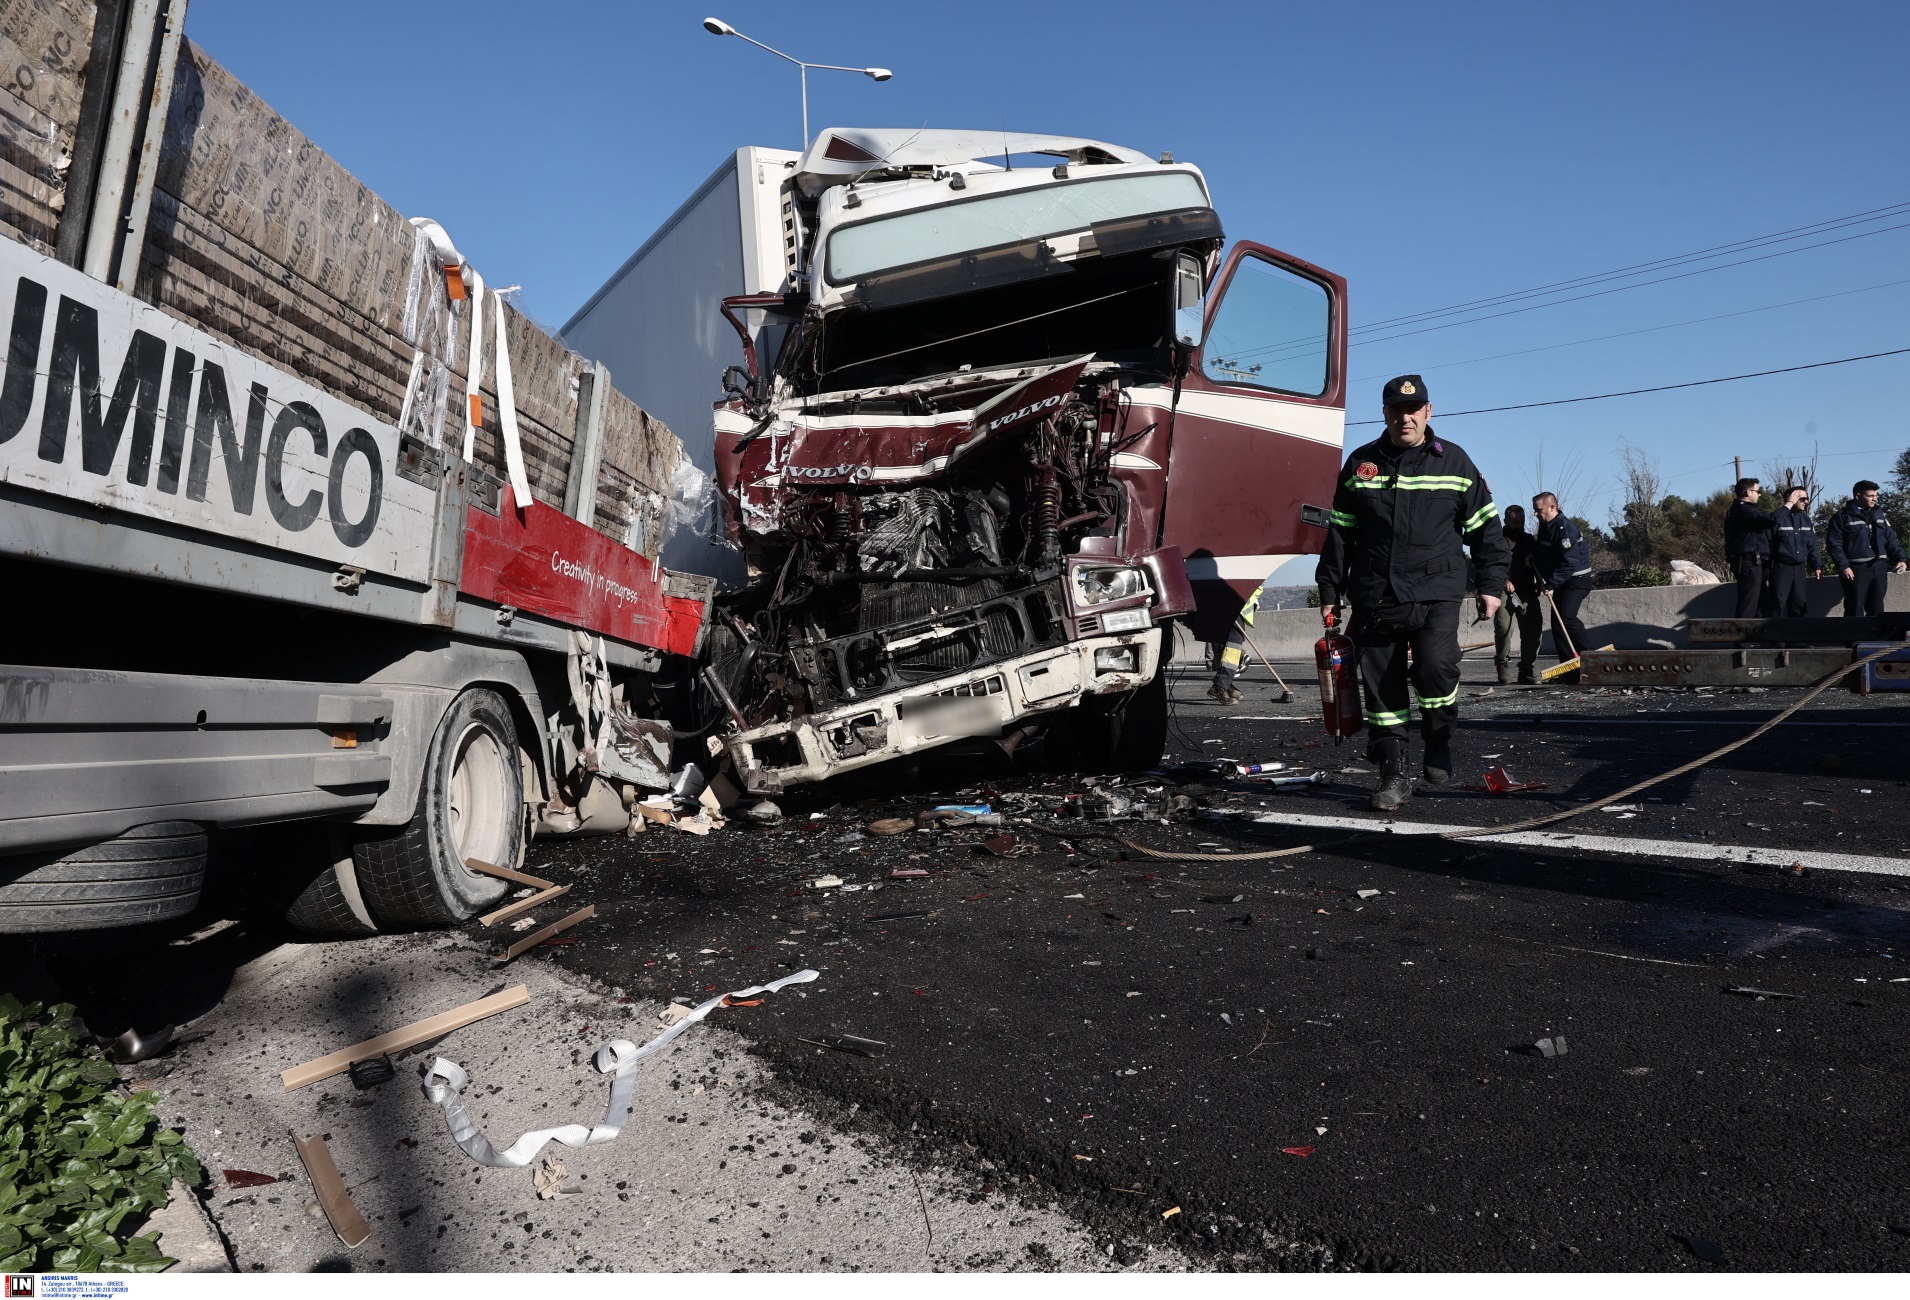 Μαγνησία: Έτσι σκοτώθηκε οδηγός νταλίκας από συνάδελφό του – Νέα στοιχεία για το δυστύχημα